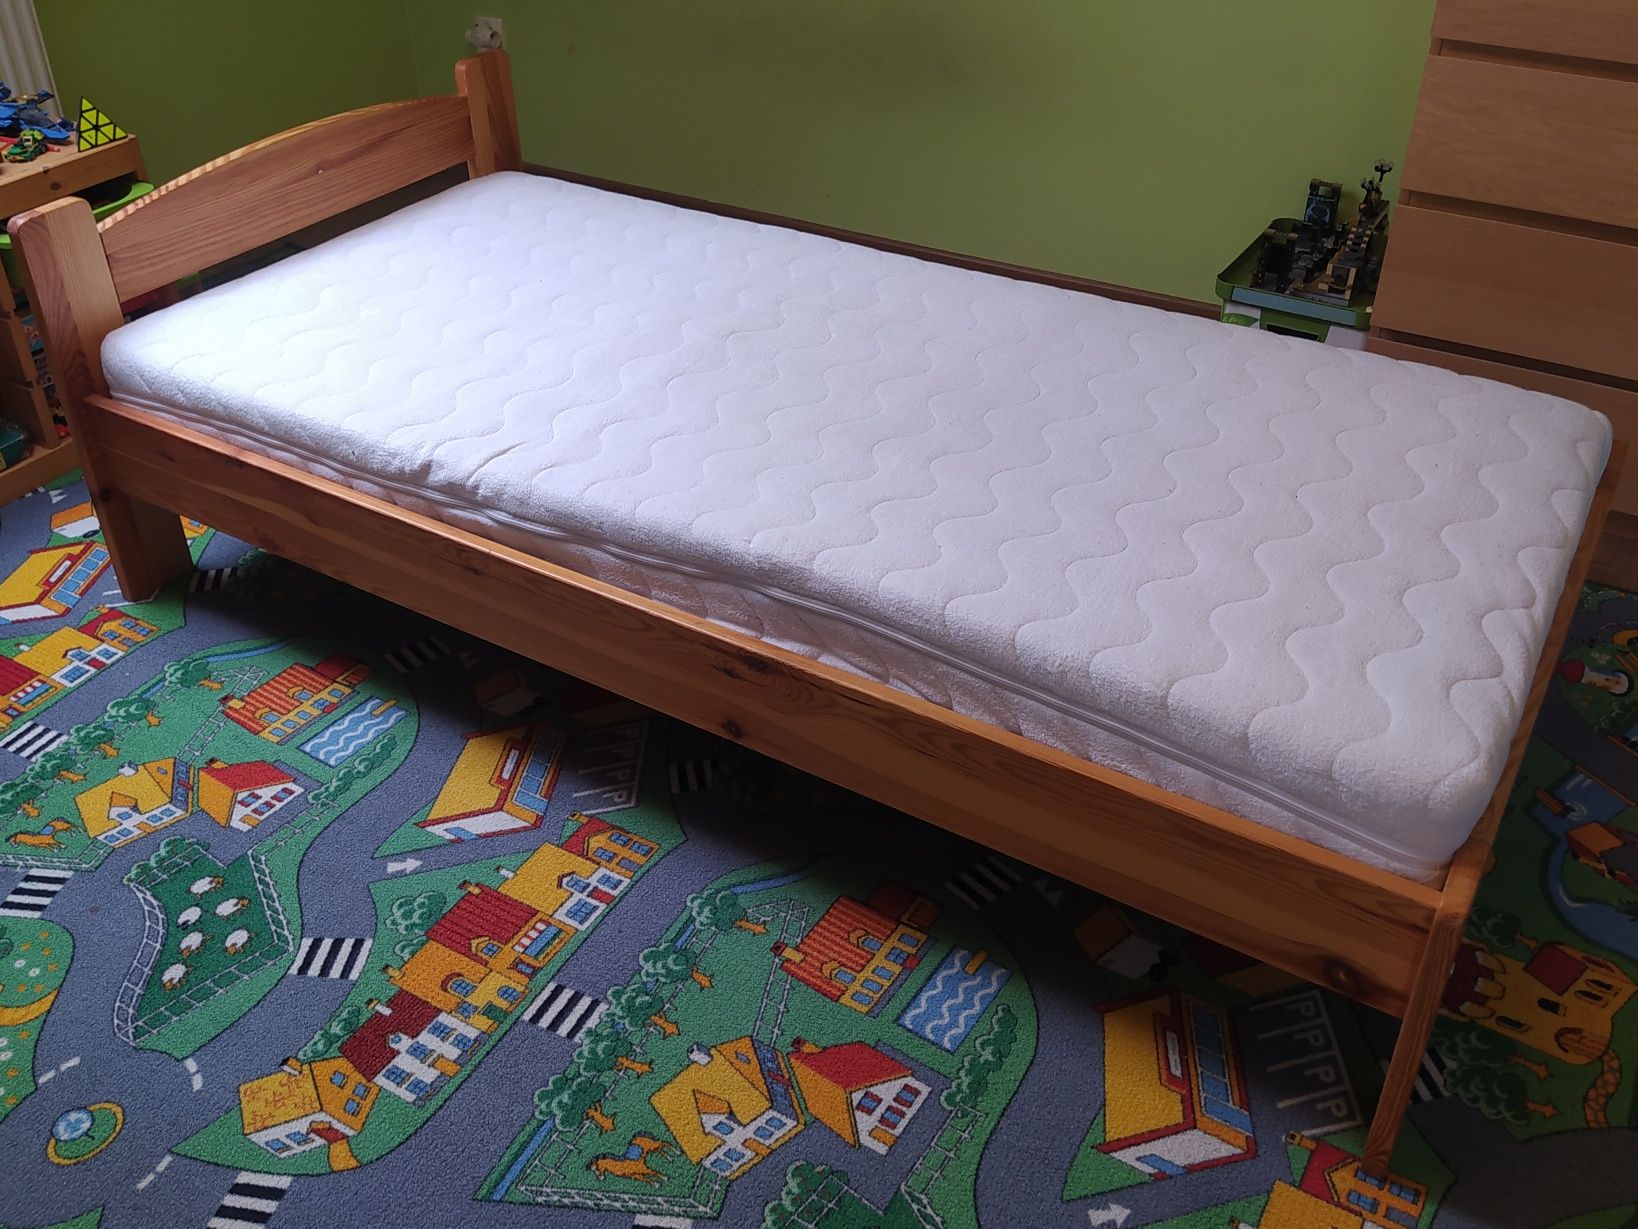 Łóżko drewniane sosnowe MILANO 90x190 1szt. z 2